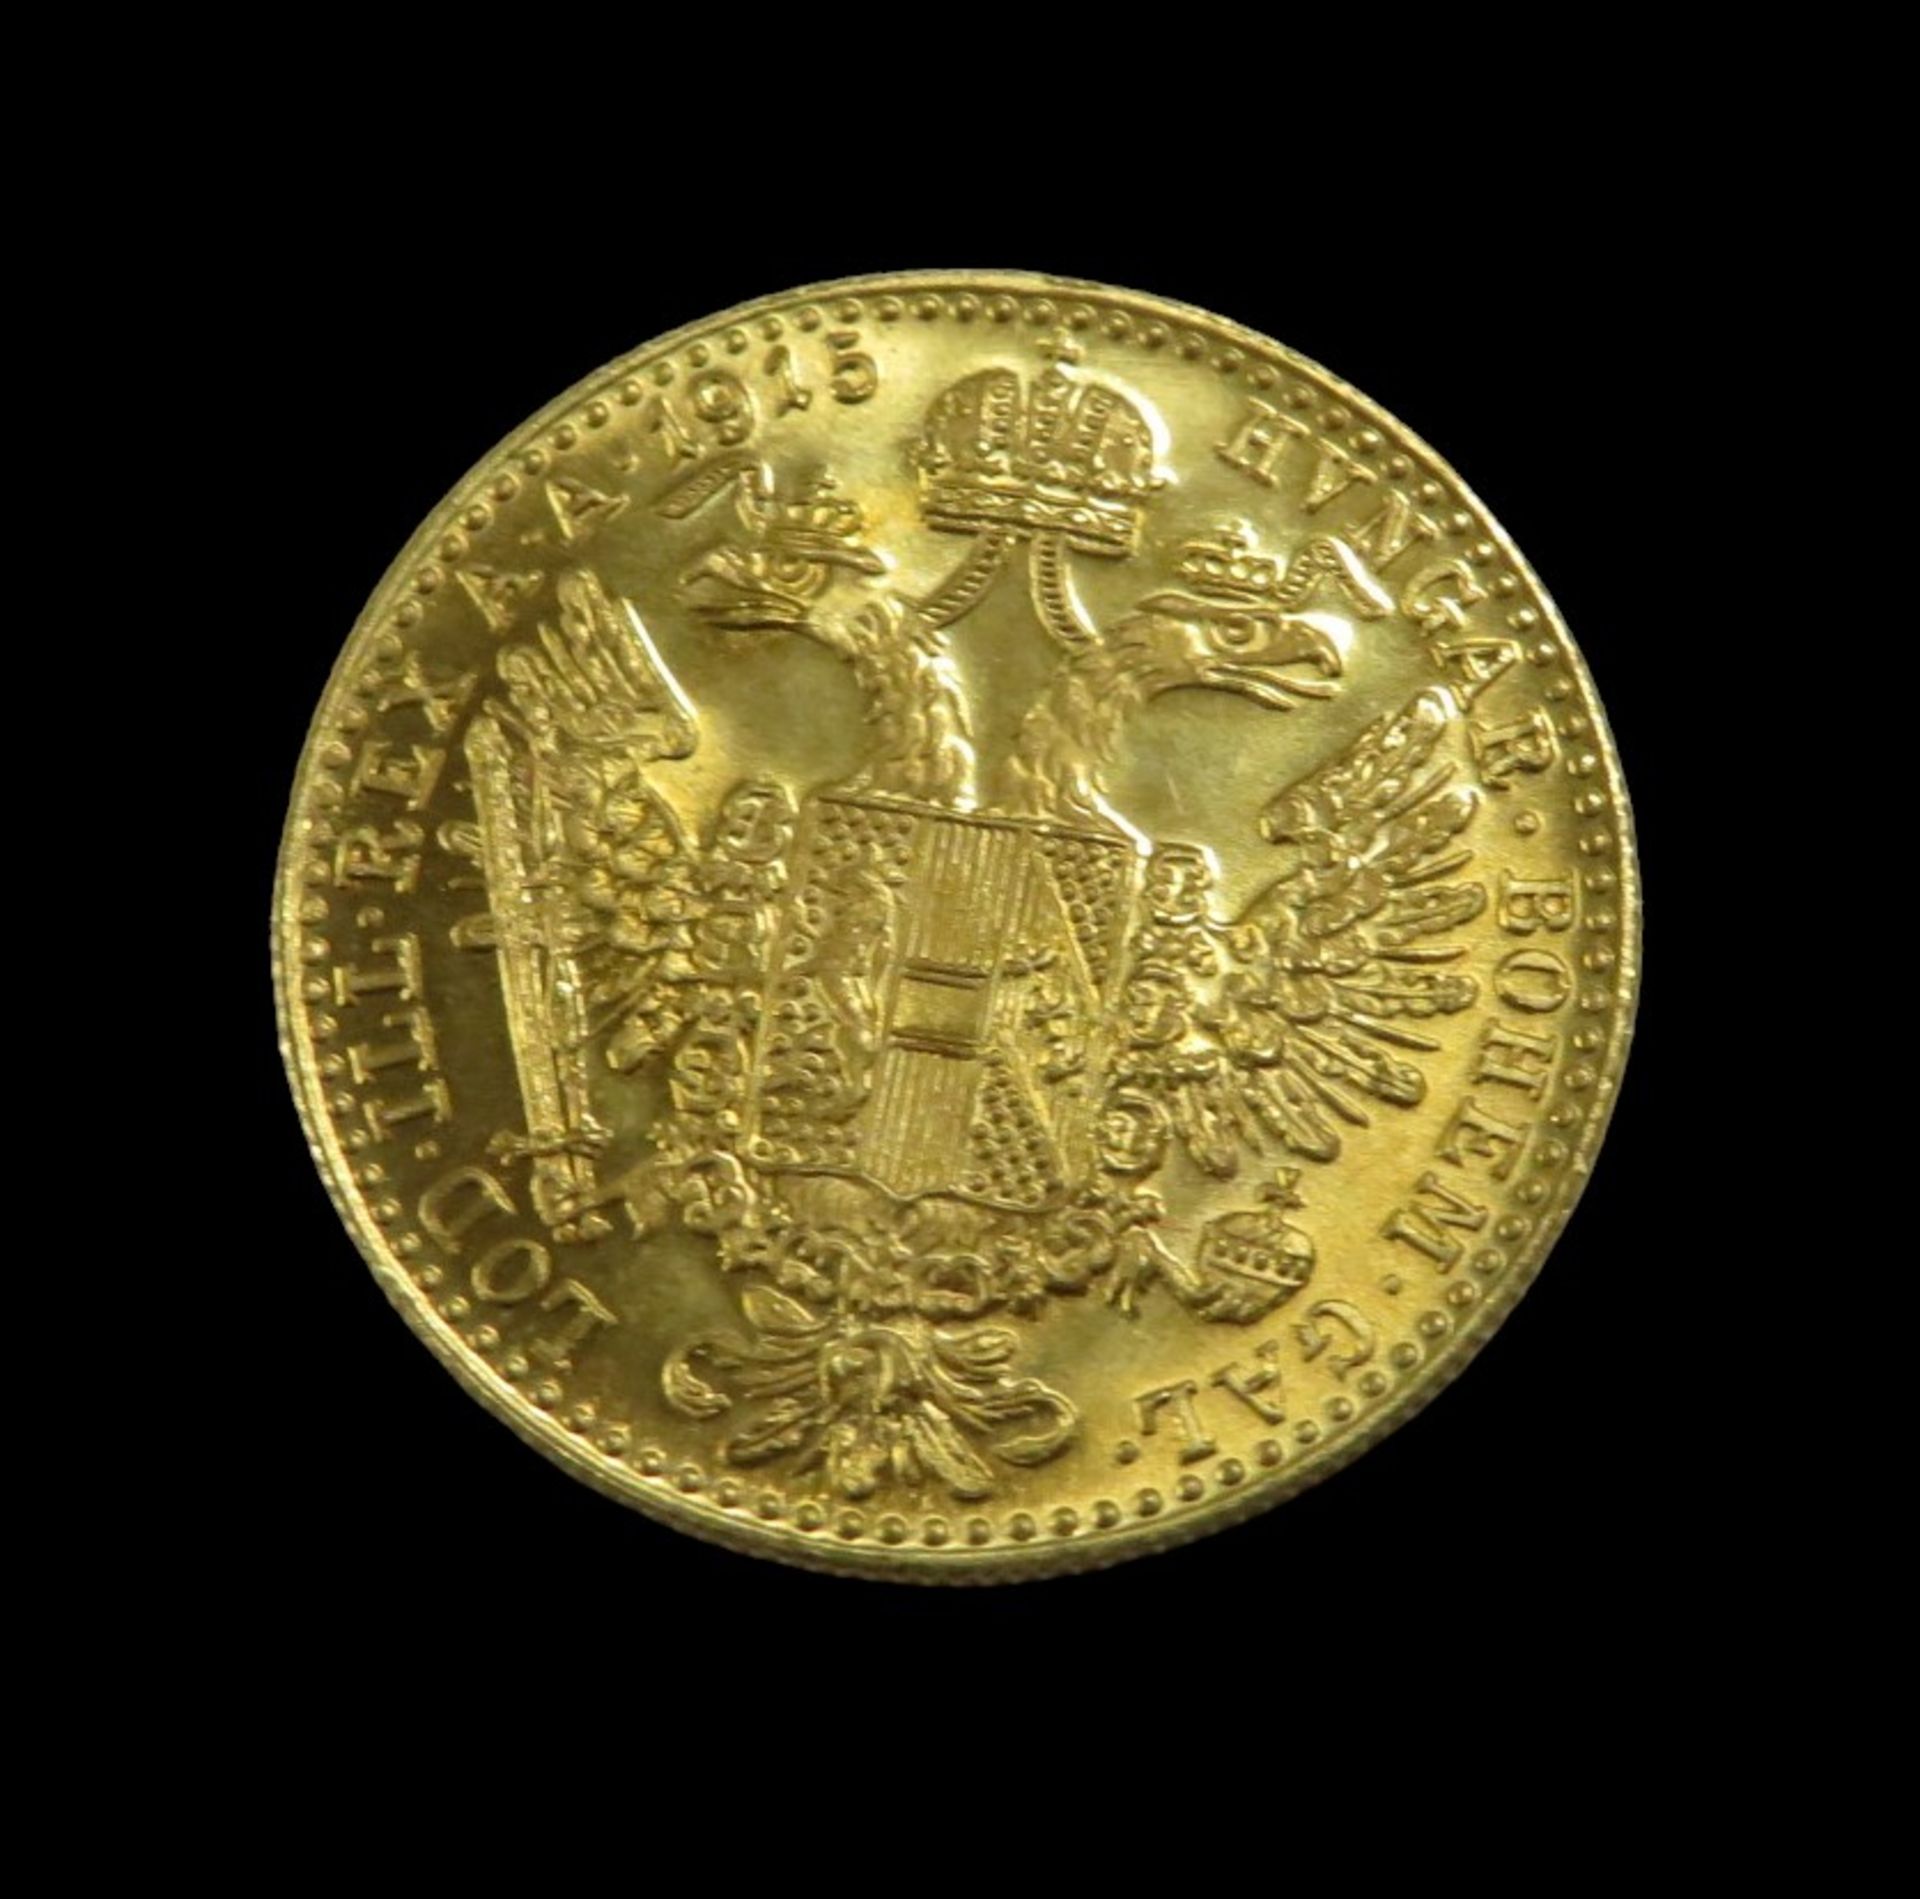 Goldmünze, Österreich, 1 Dukat, Kaiser Franz Joseph I, 1915, Gold 986/000, 3,5 g, d 1,97 cm. - Bild 2 aus 2